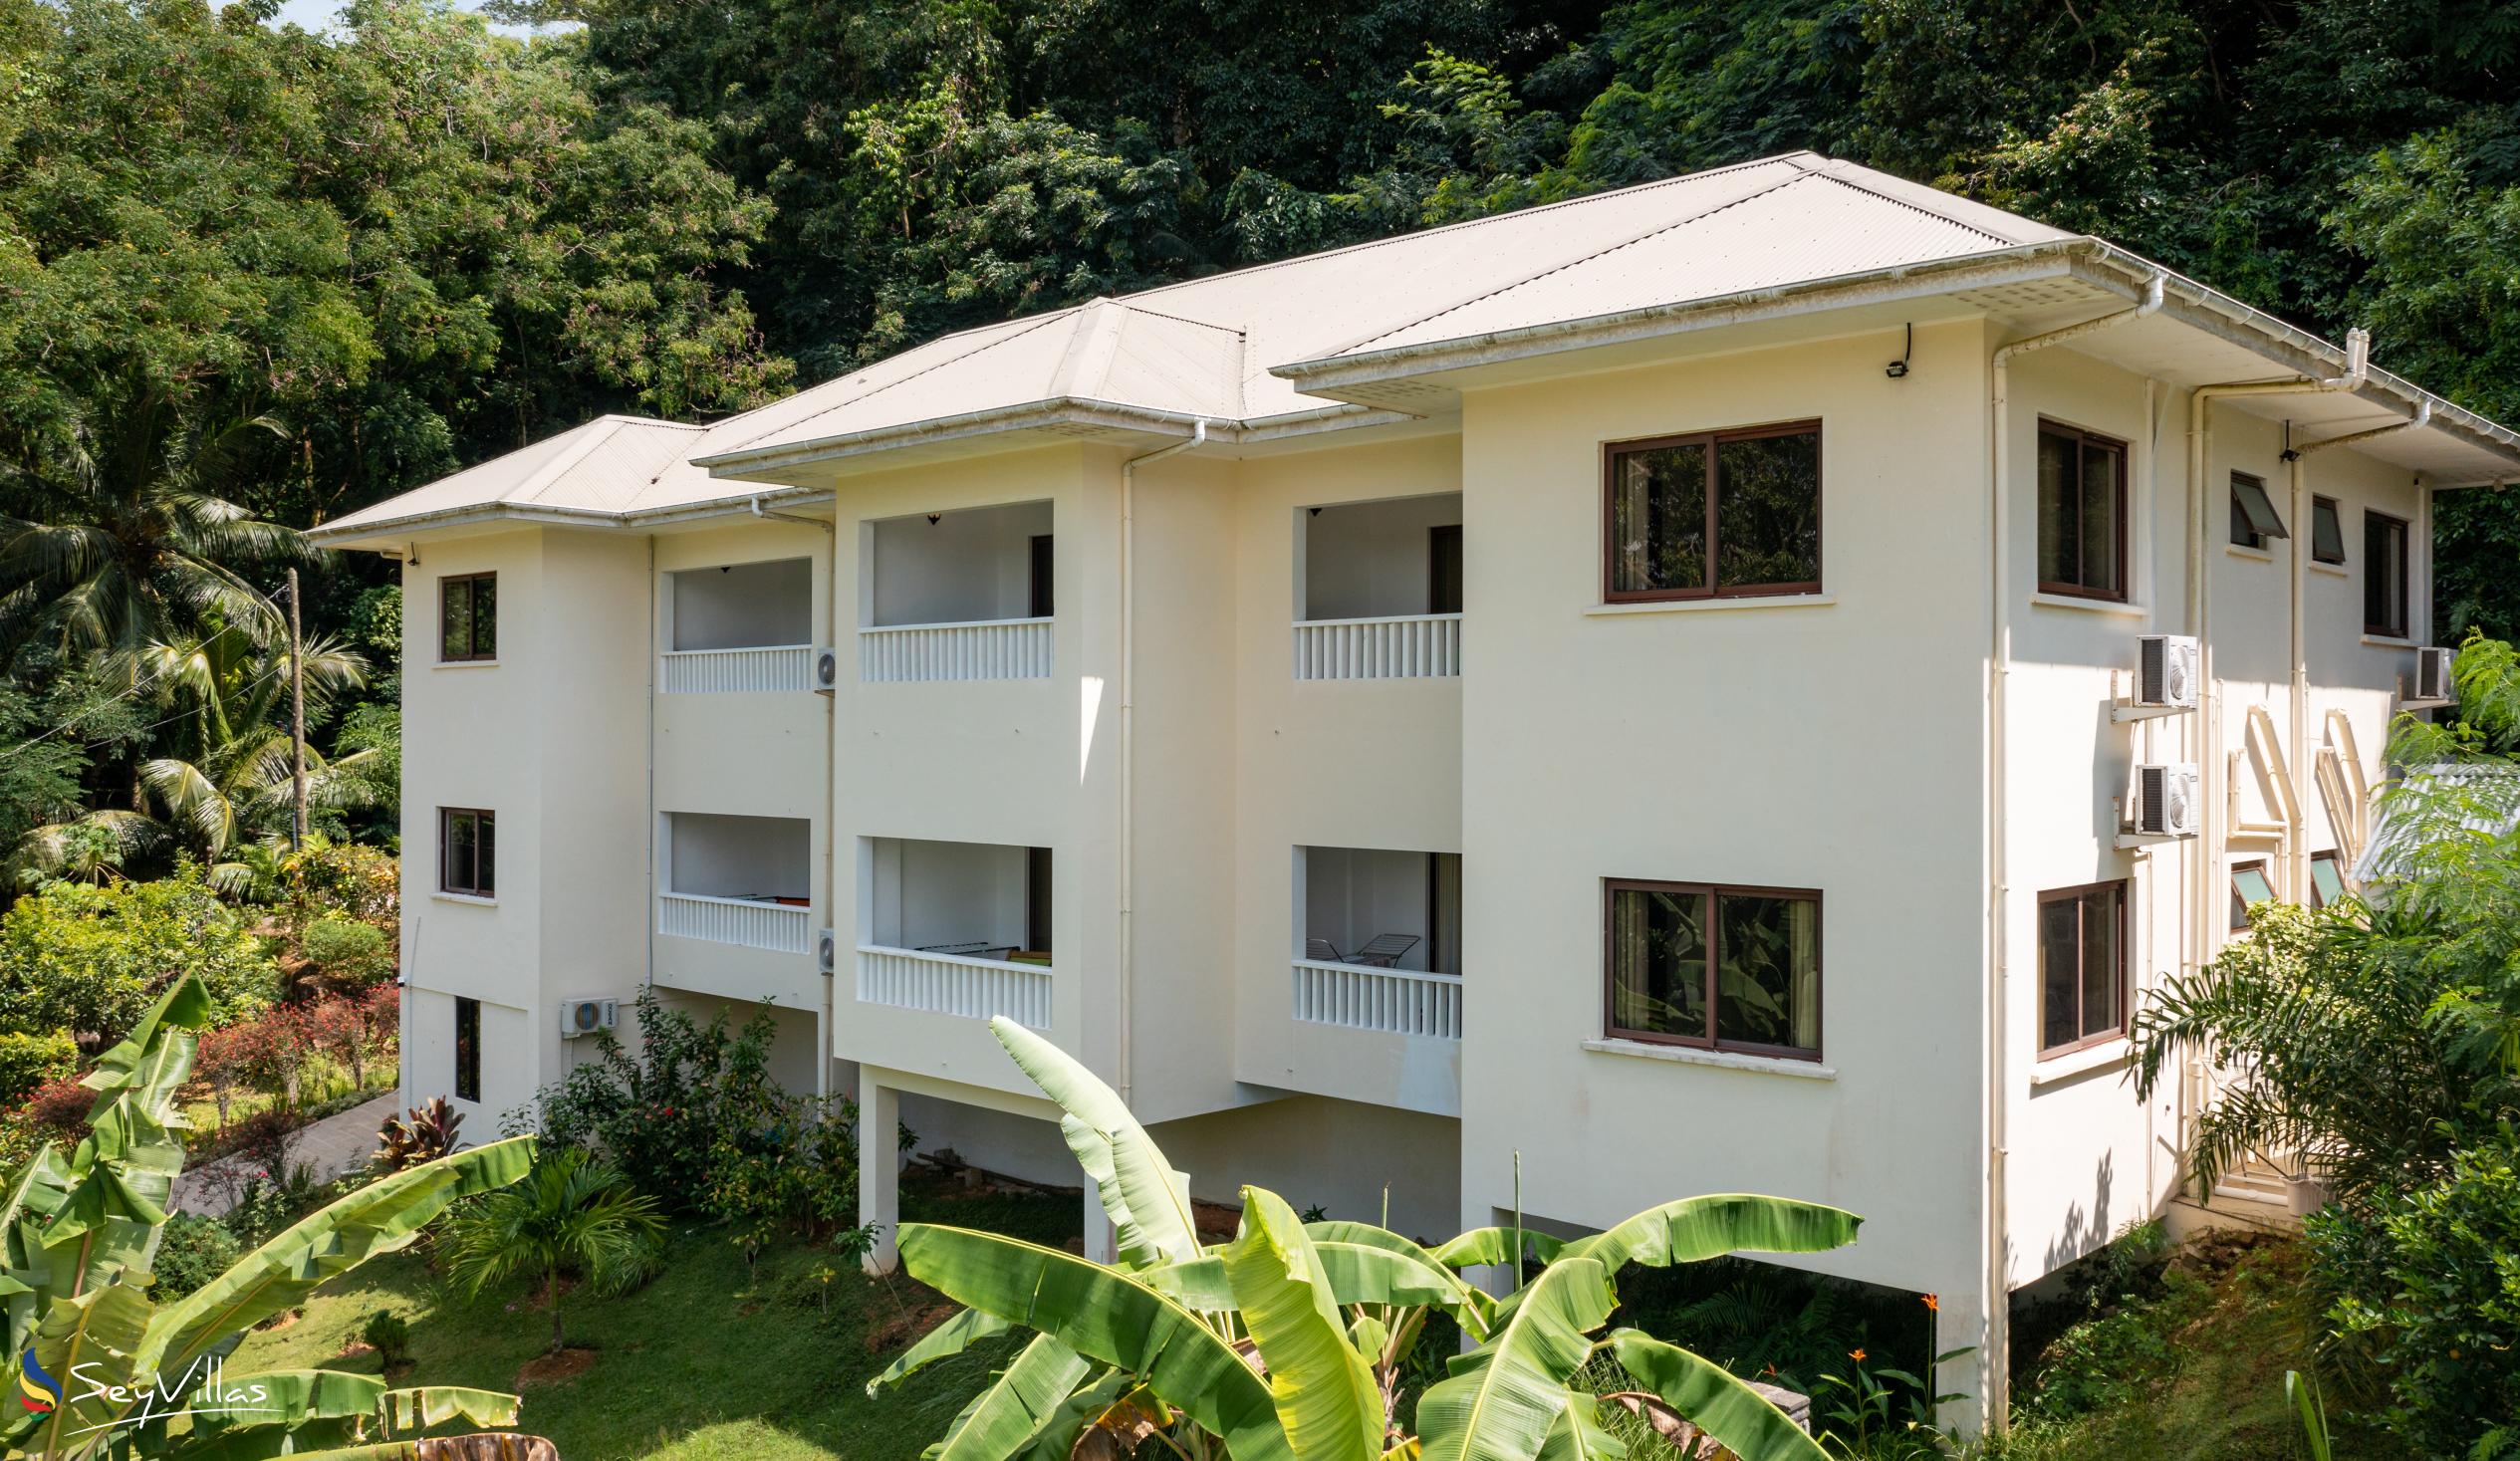 Foto 50: Kanasuk Self Catering Apartments - Aussenbereich - Mahé (Seychellen)